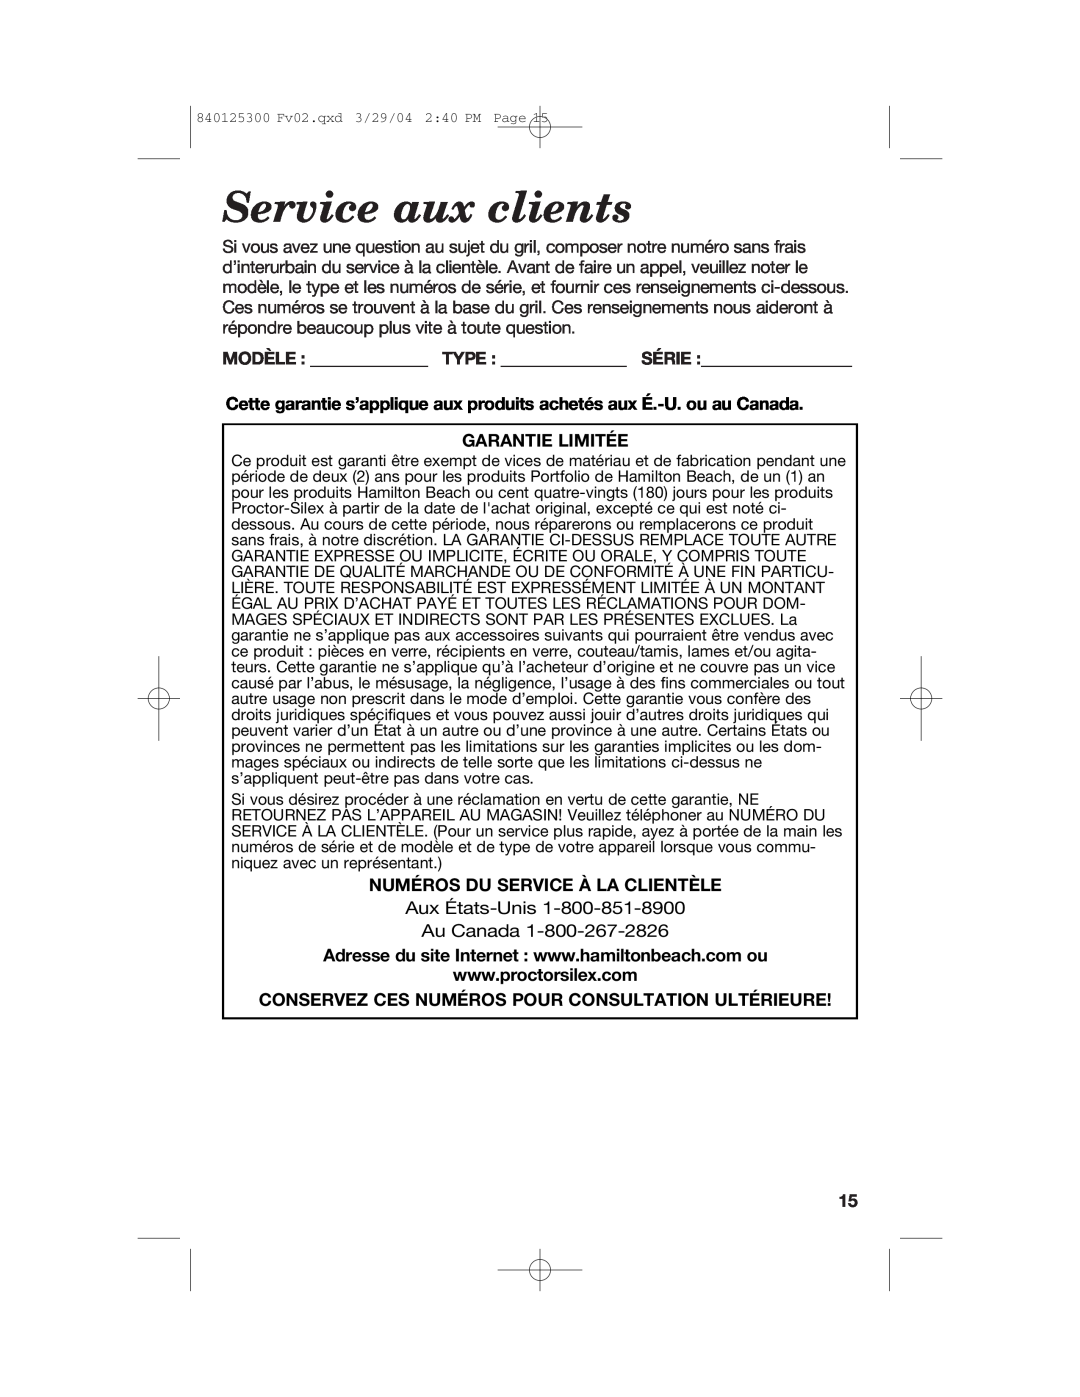 Hamilton Beach 25295 manual Service aux clients, Modèle Type Série, Garantie Limitée, Numéros Du Service À La Clientèle 